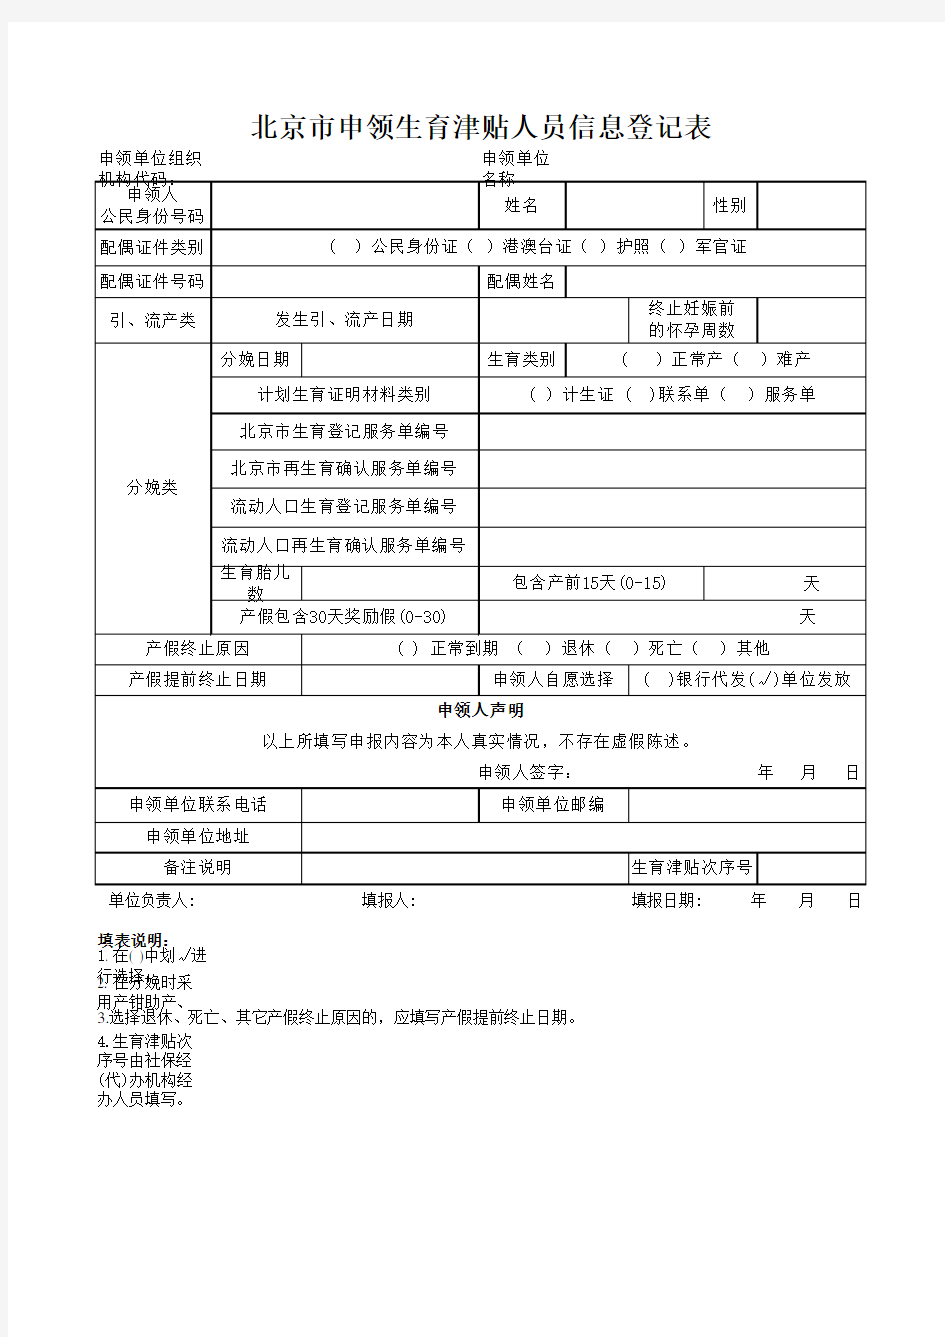 北京市申领生育津贴人员信息登记表